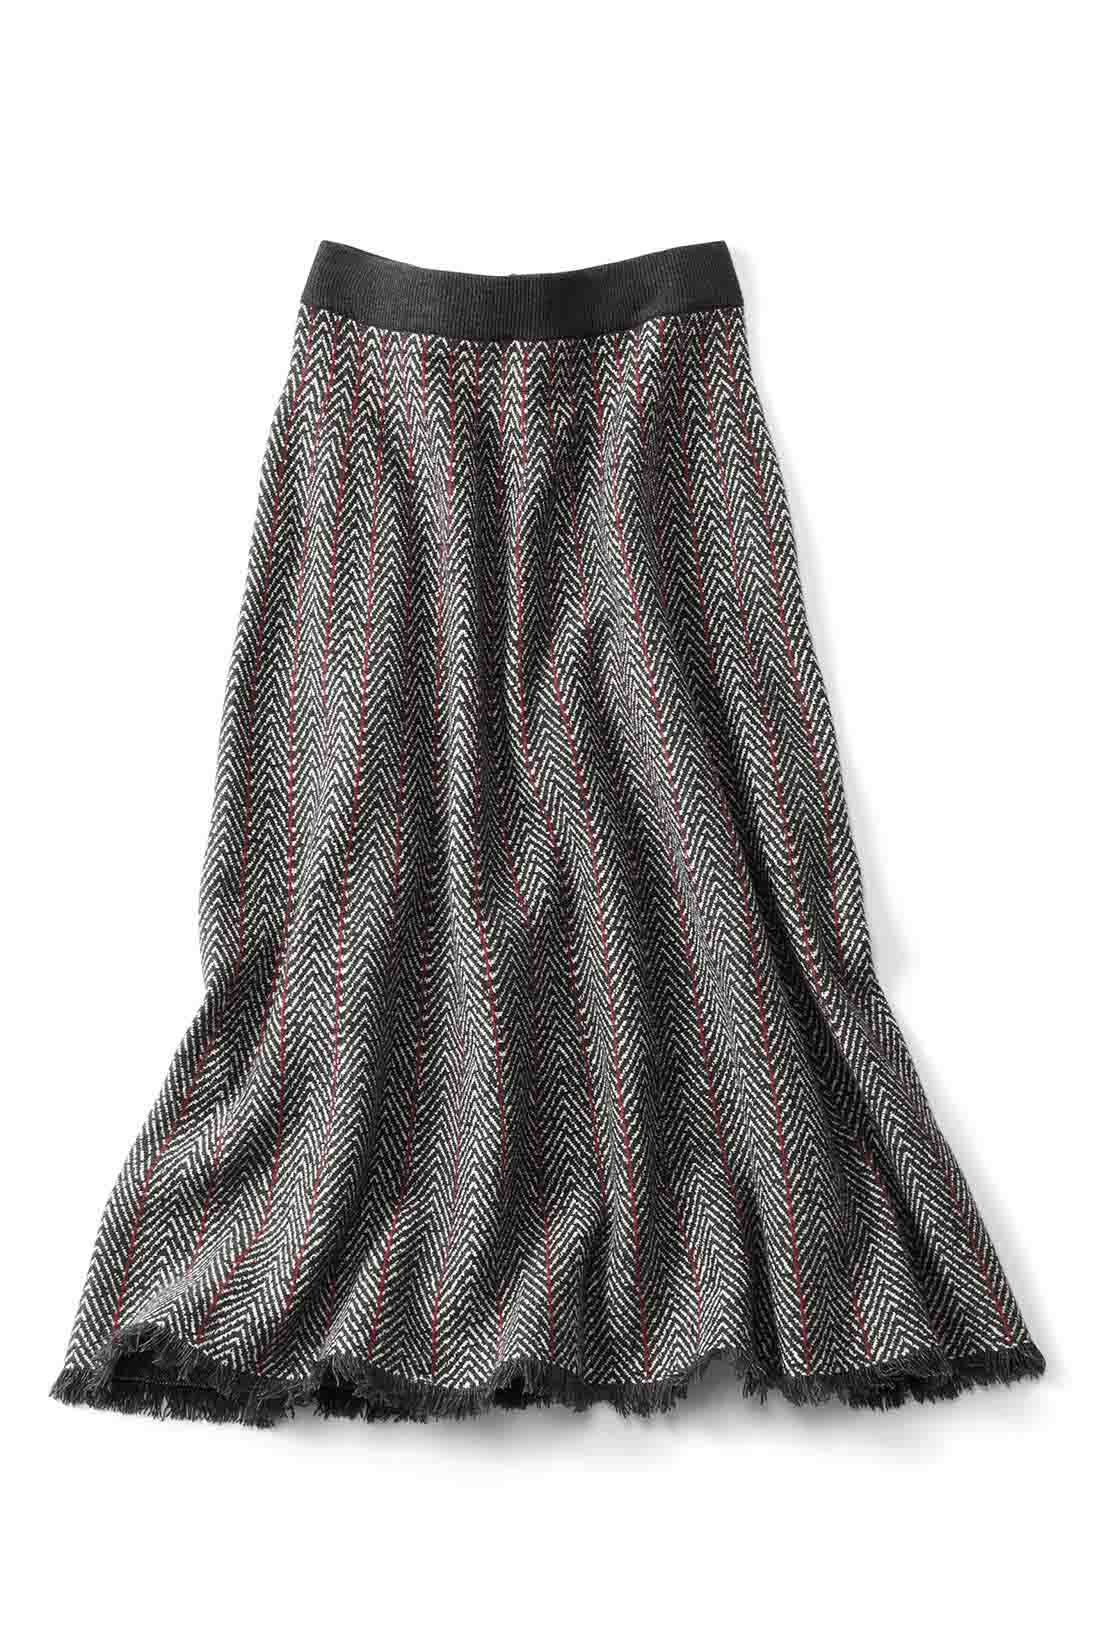 DRECO by IEDIT|【3～10日でお届け】IEDIT[イディット]　フリンジとツイード柄が着映える ダブルジャカードニットスカート〈ダークグレー〉|〈ダークグレー〉